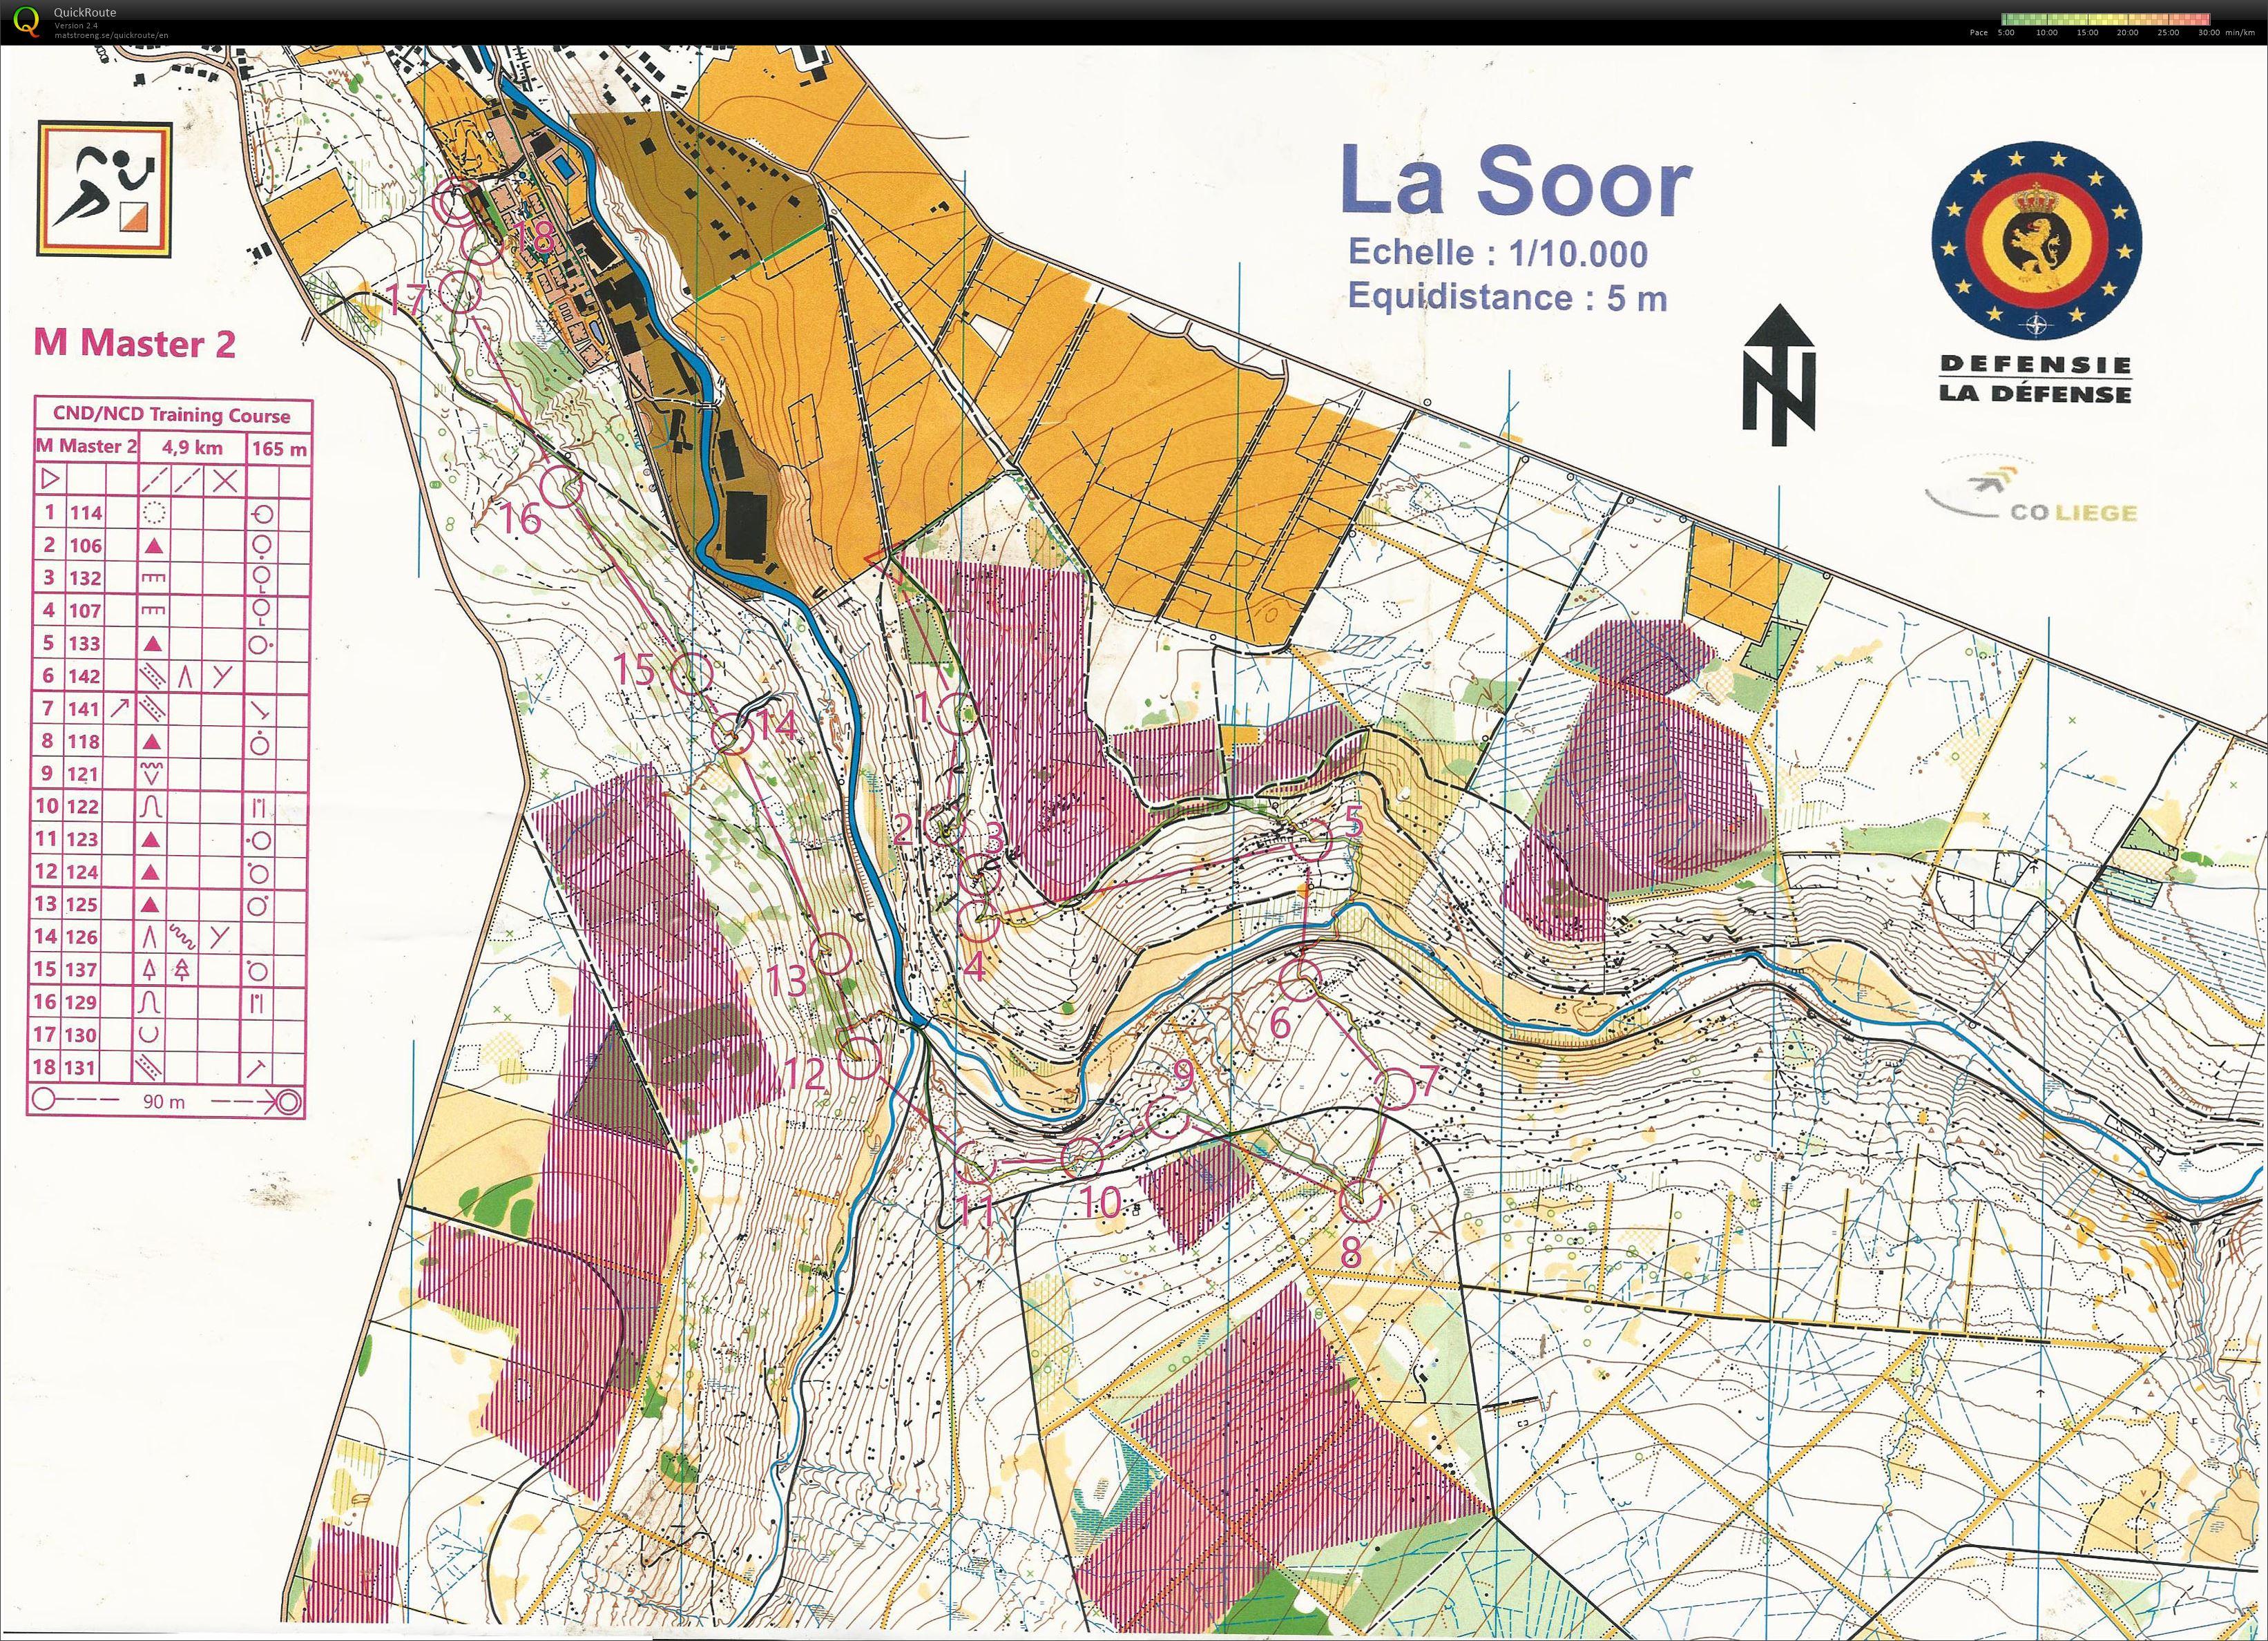 La Soor (14/02/2020)